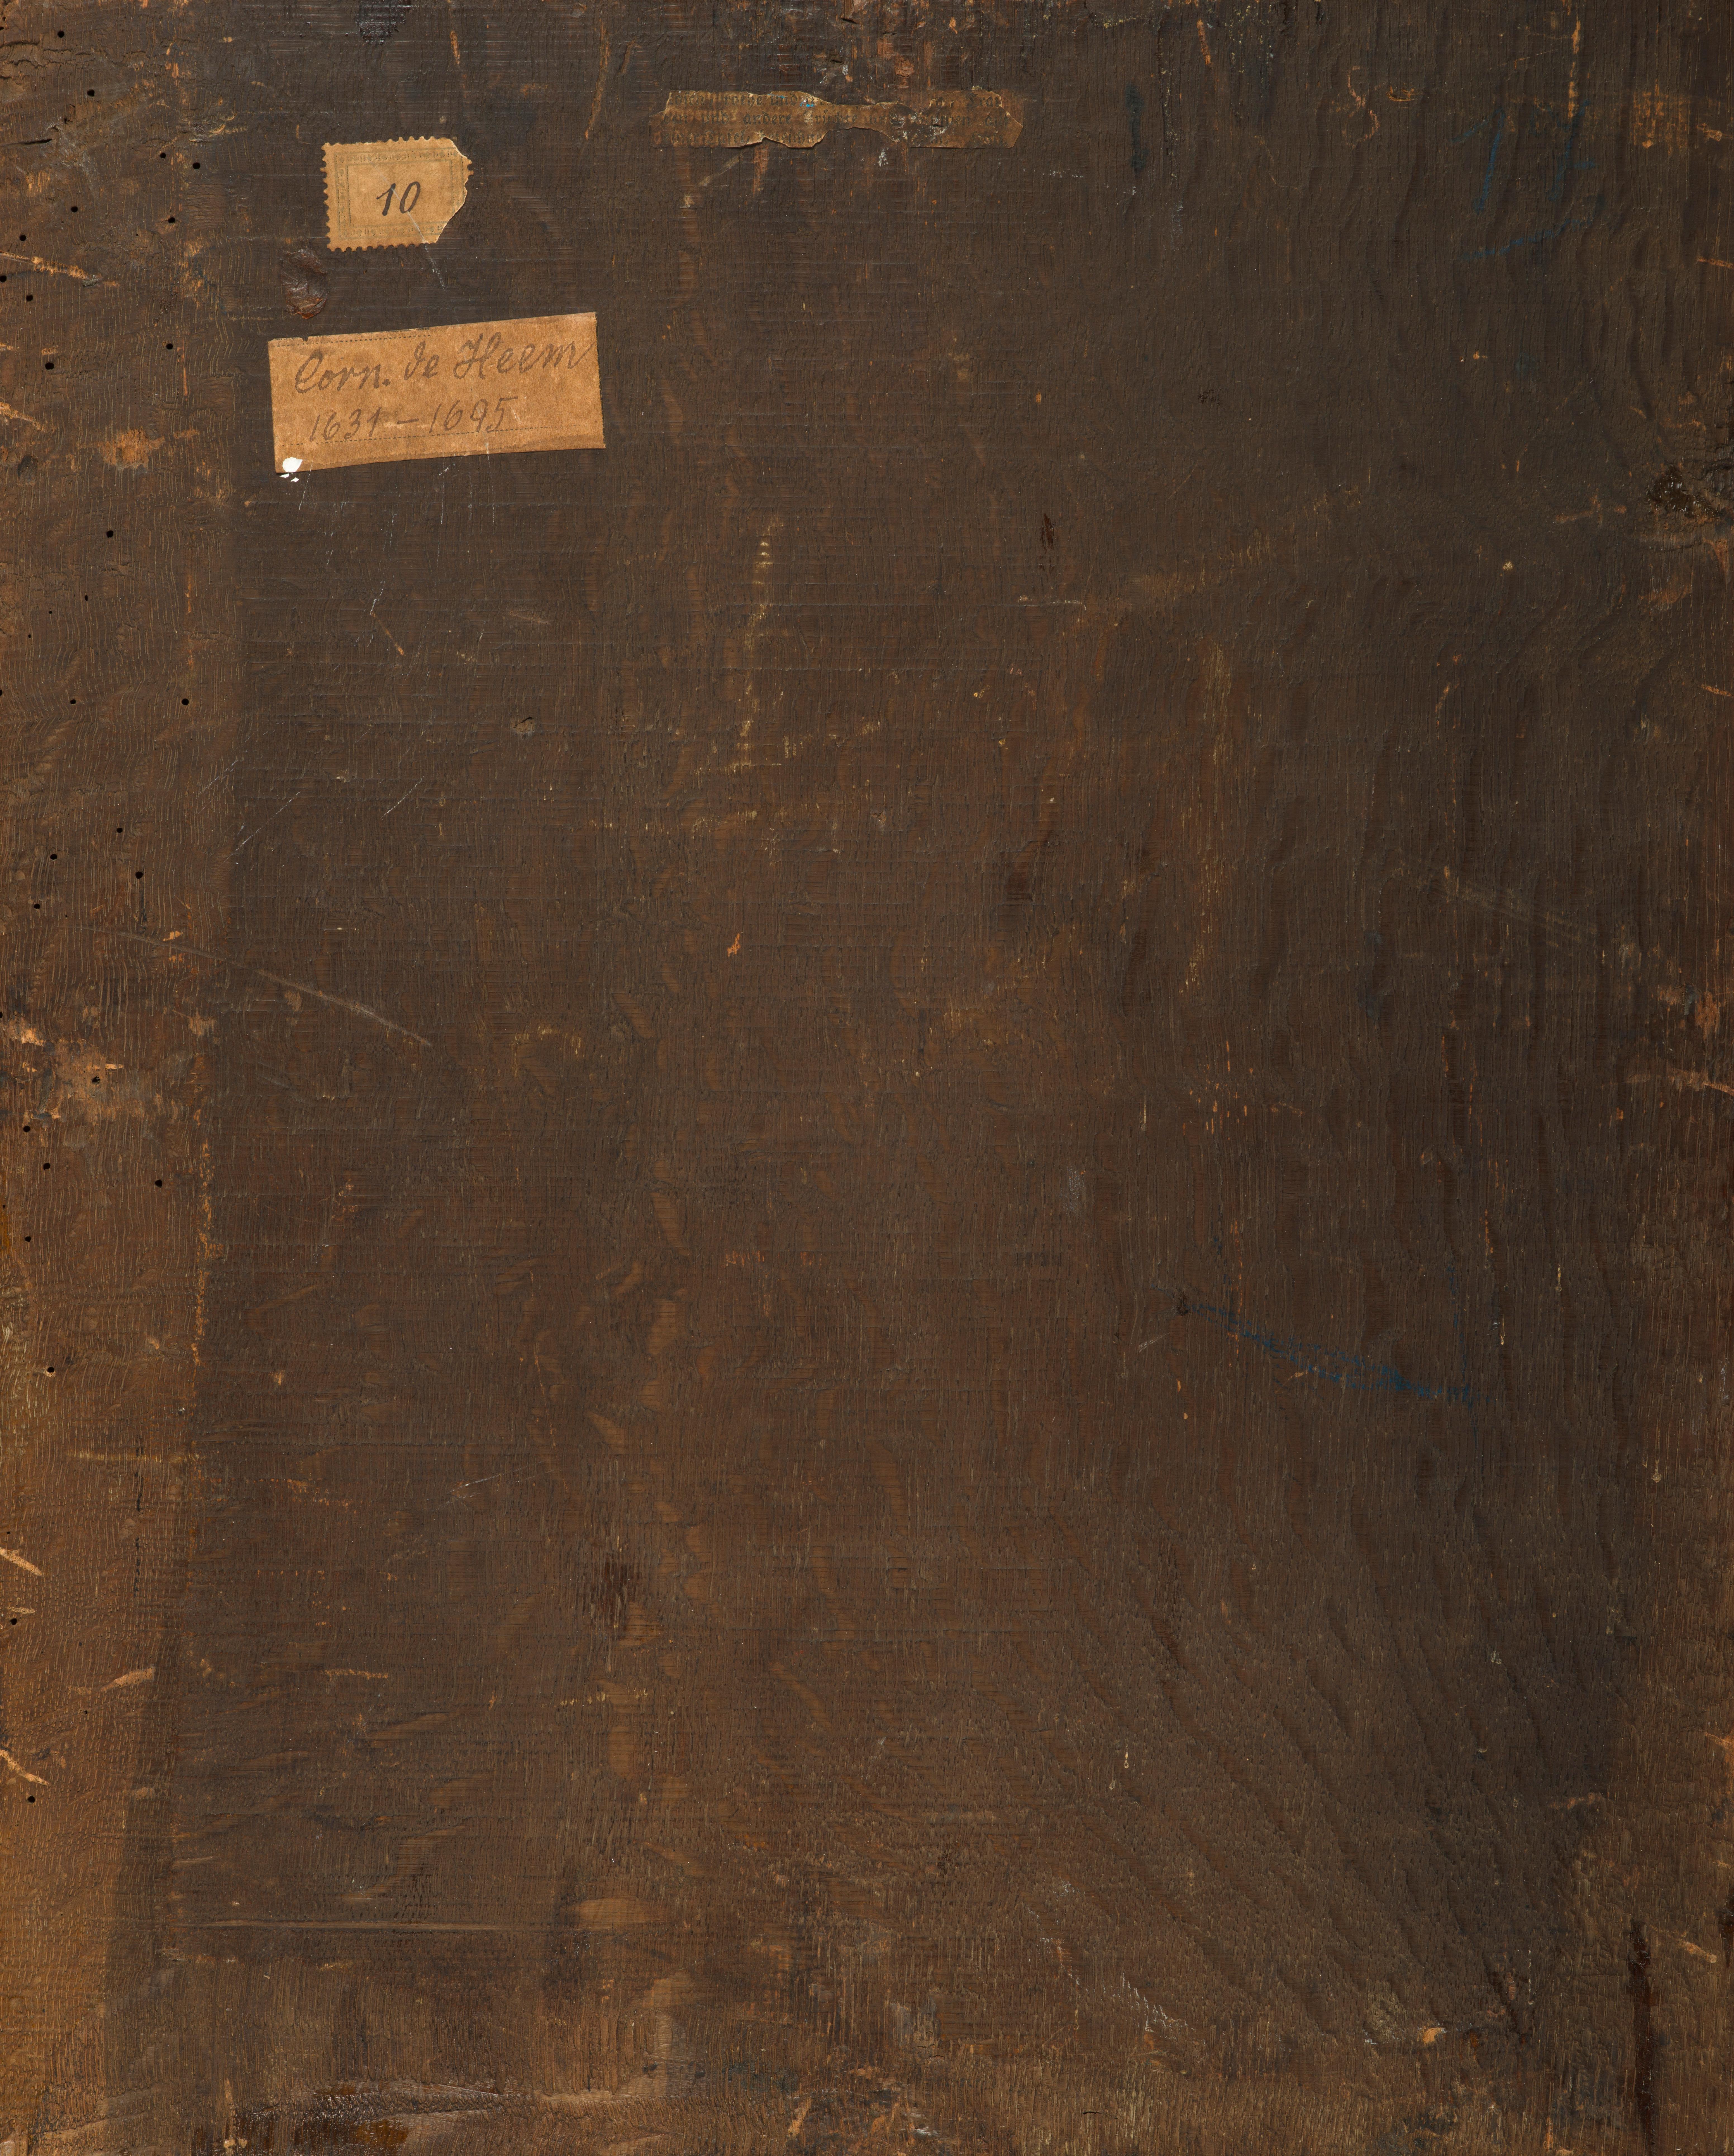 Rosen, Lilien, Trauben, Orange und Pferd Kastanienholz auf Stein ledge – Painting von David Cornelisz de Heem